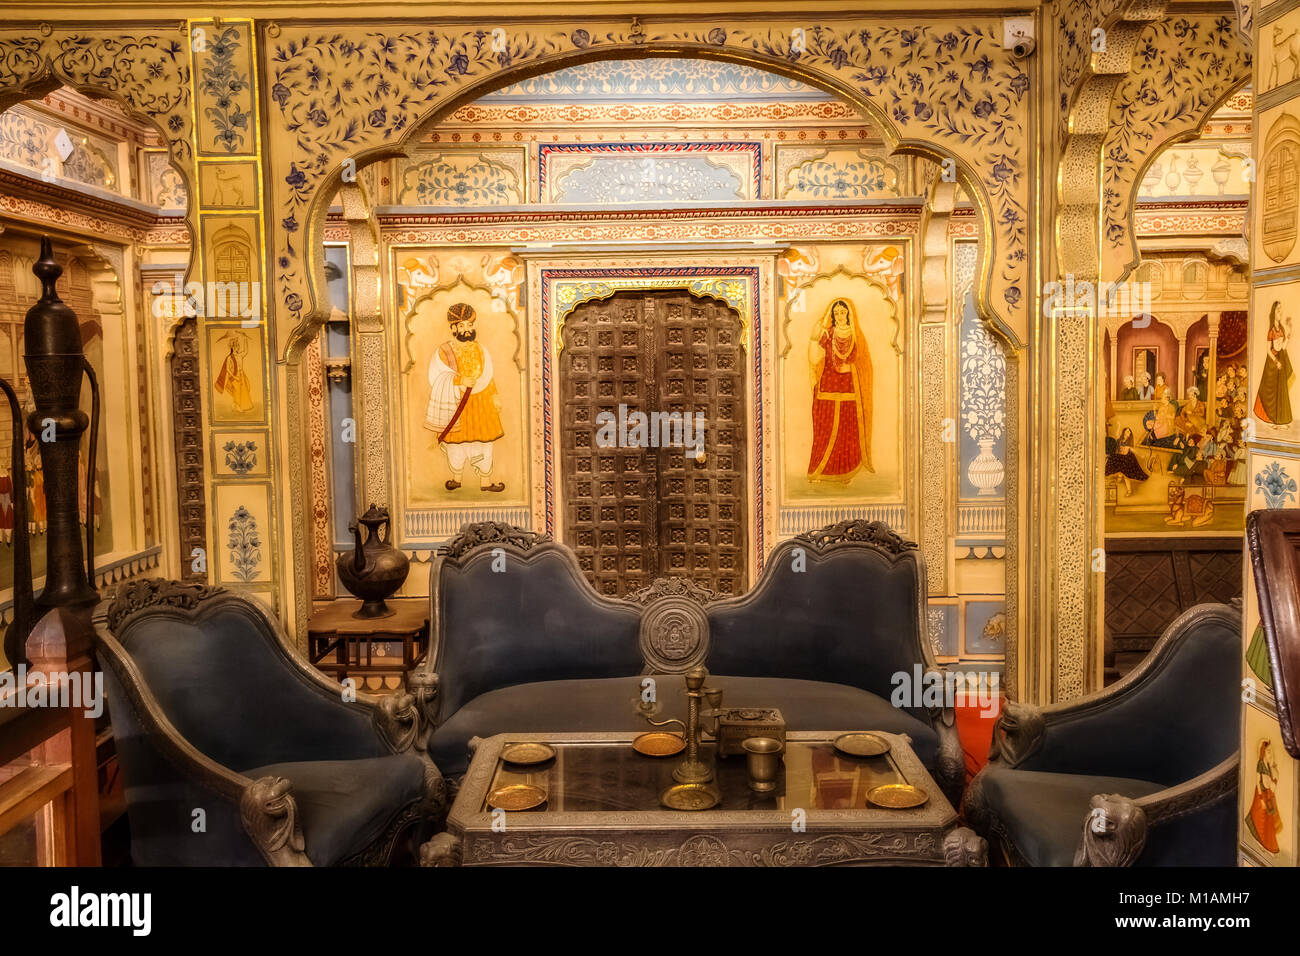 Rajasthani Kunstwerk an der Wand Kunst Gemälde von Royal Palace Zimmer mit antiken Möbeln im denkmalgeschützten Gebäude Patwon ki Haveli, Jaisalmer Rajasthan. Stockfoto